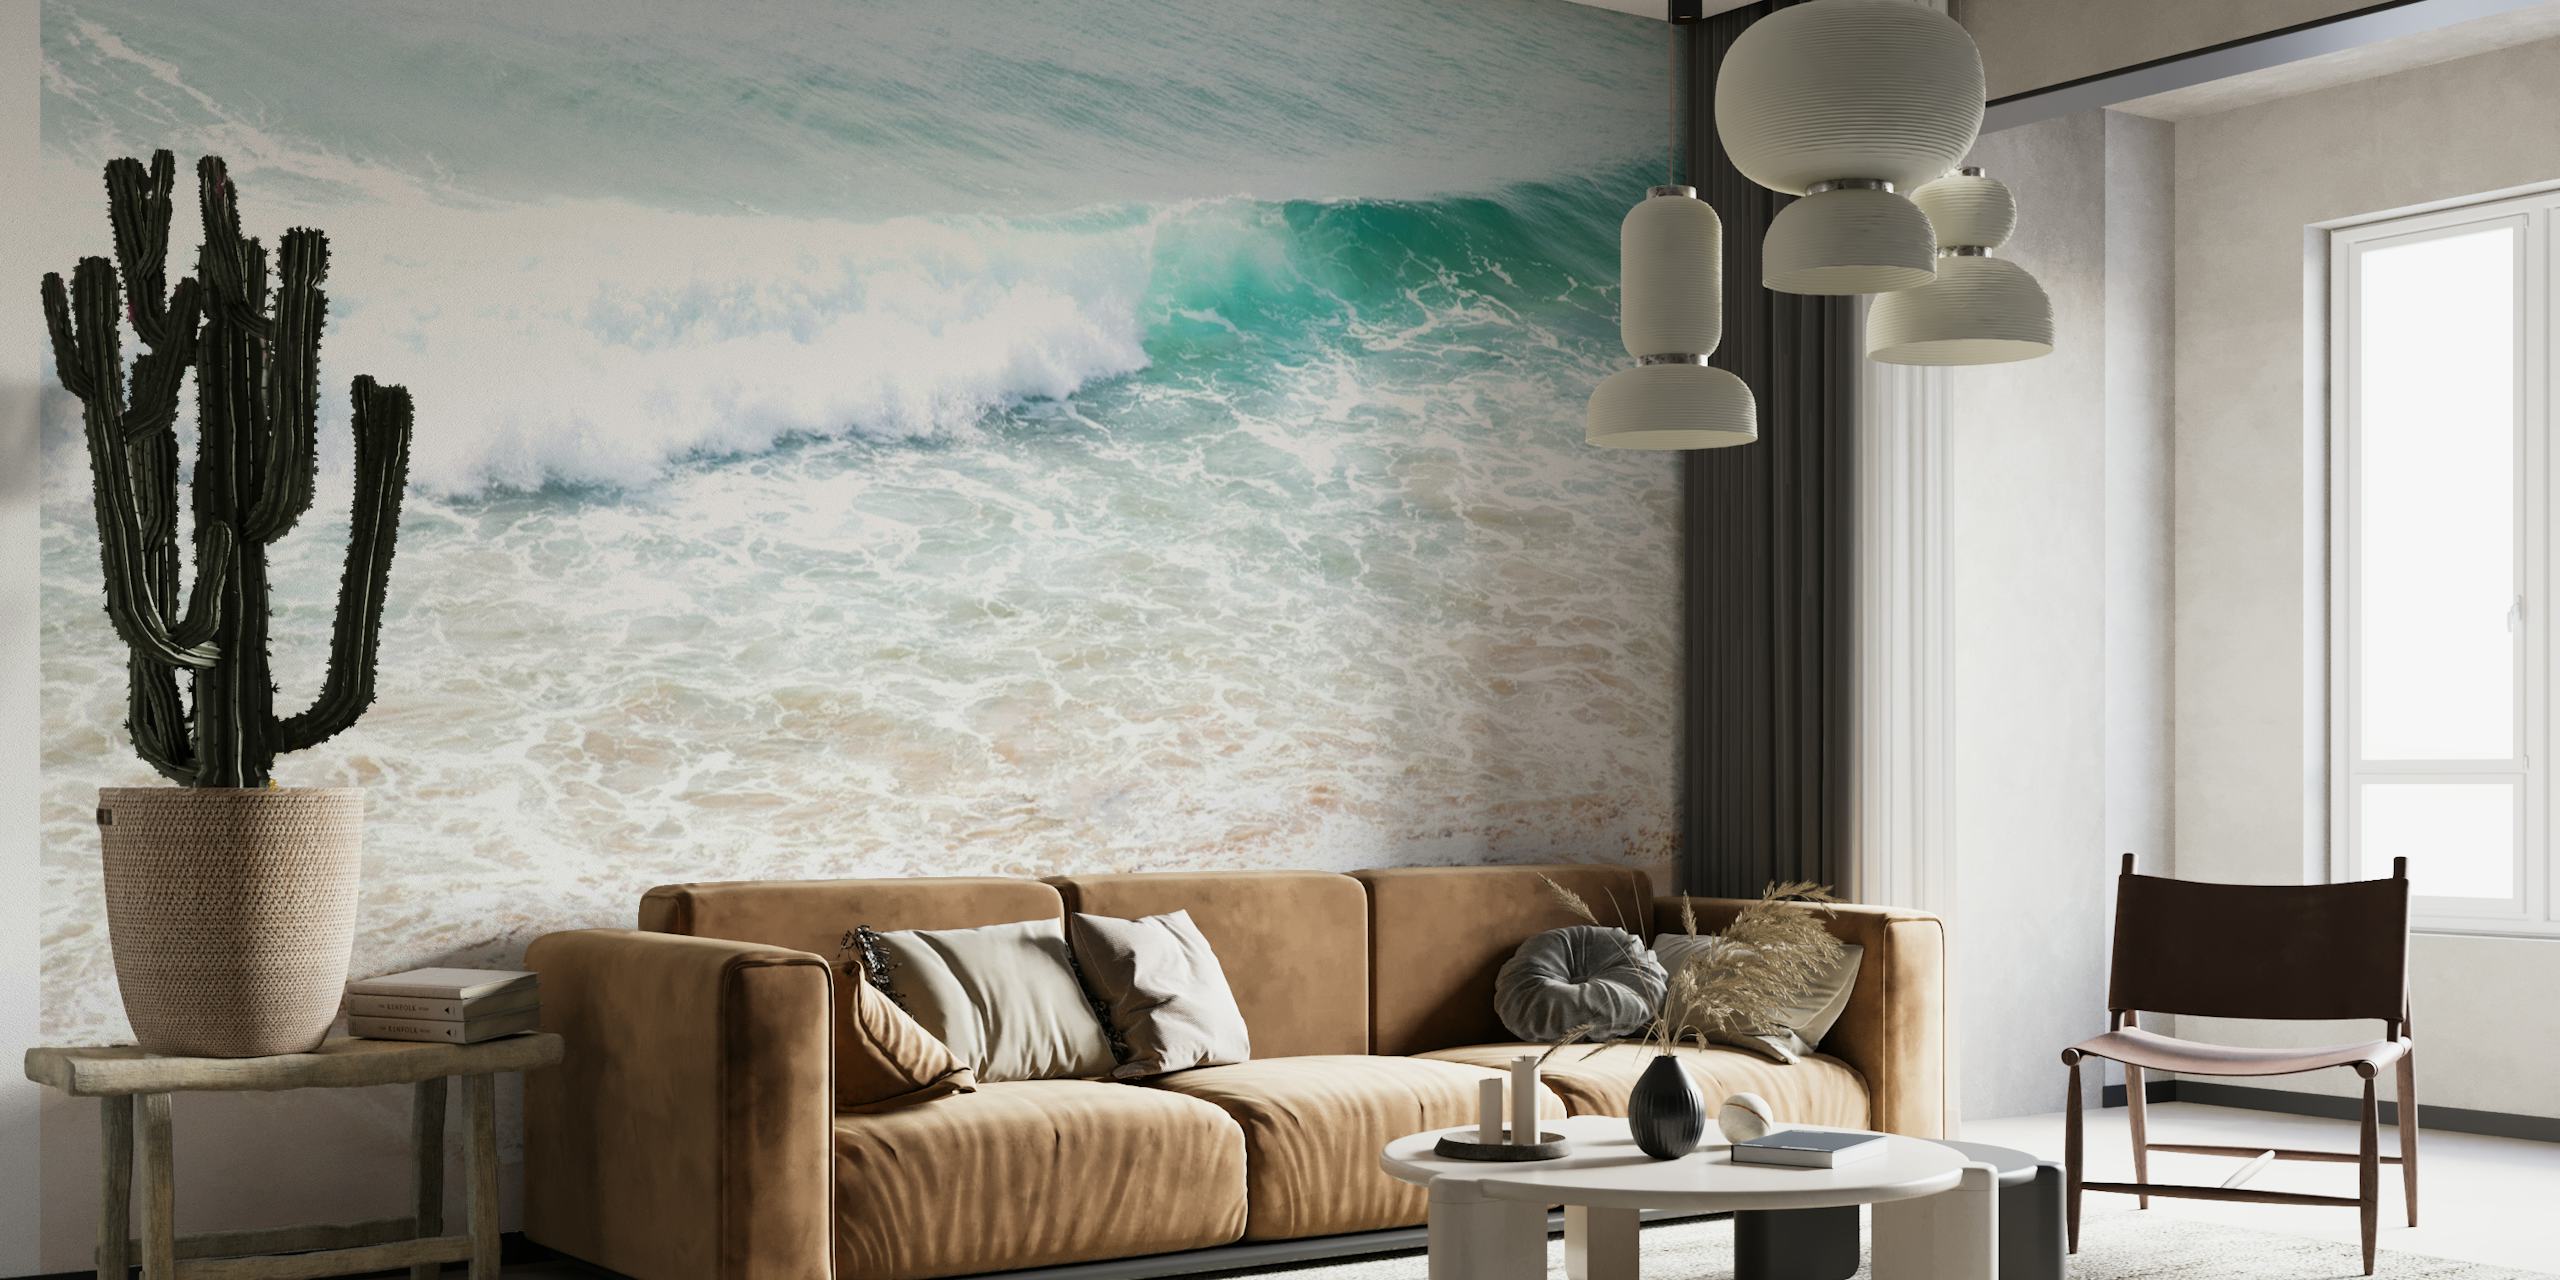 Atlantic Ocean Waves 2 wallpaper